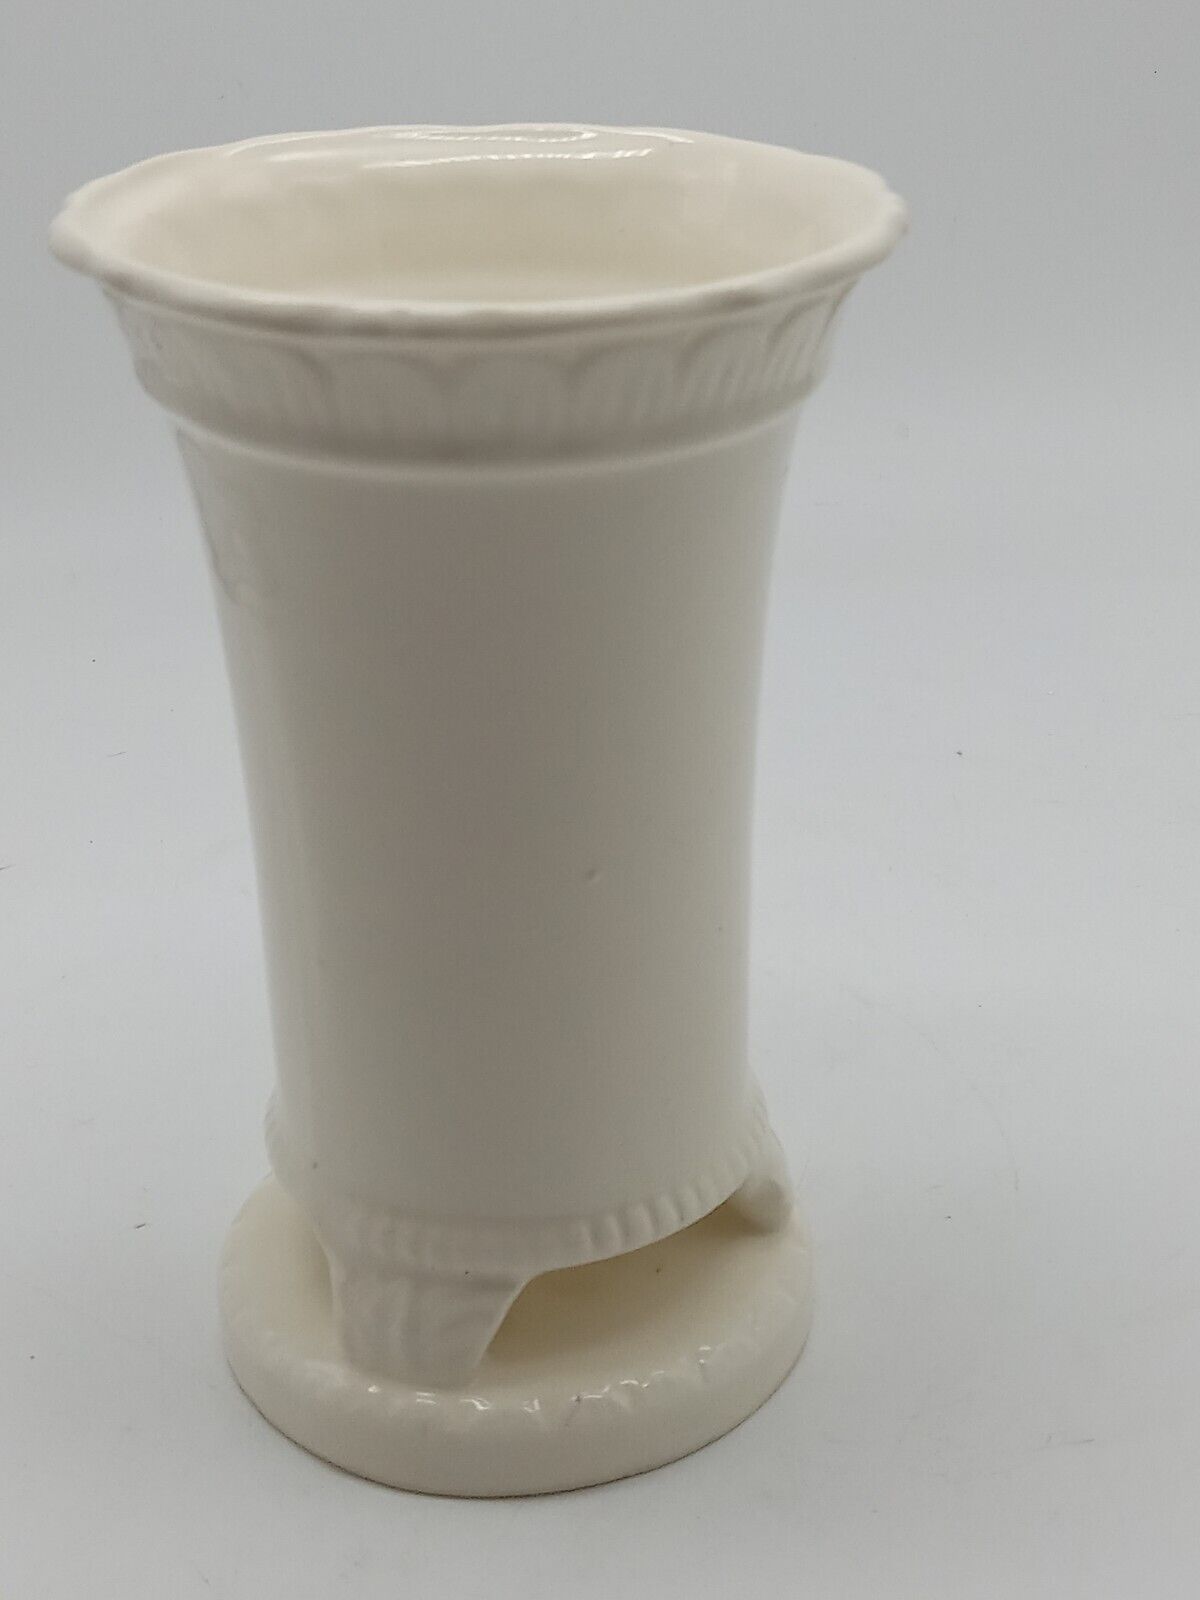 Vtg Japanese White Porcelain Vase/Brush Holder 1930s Cut Out Bottom 5 inch Tall